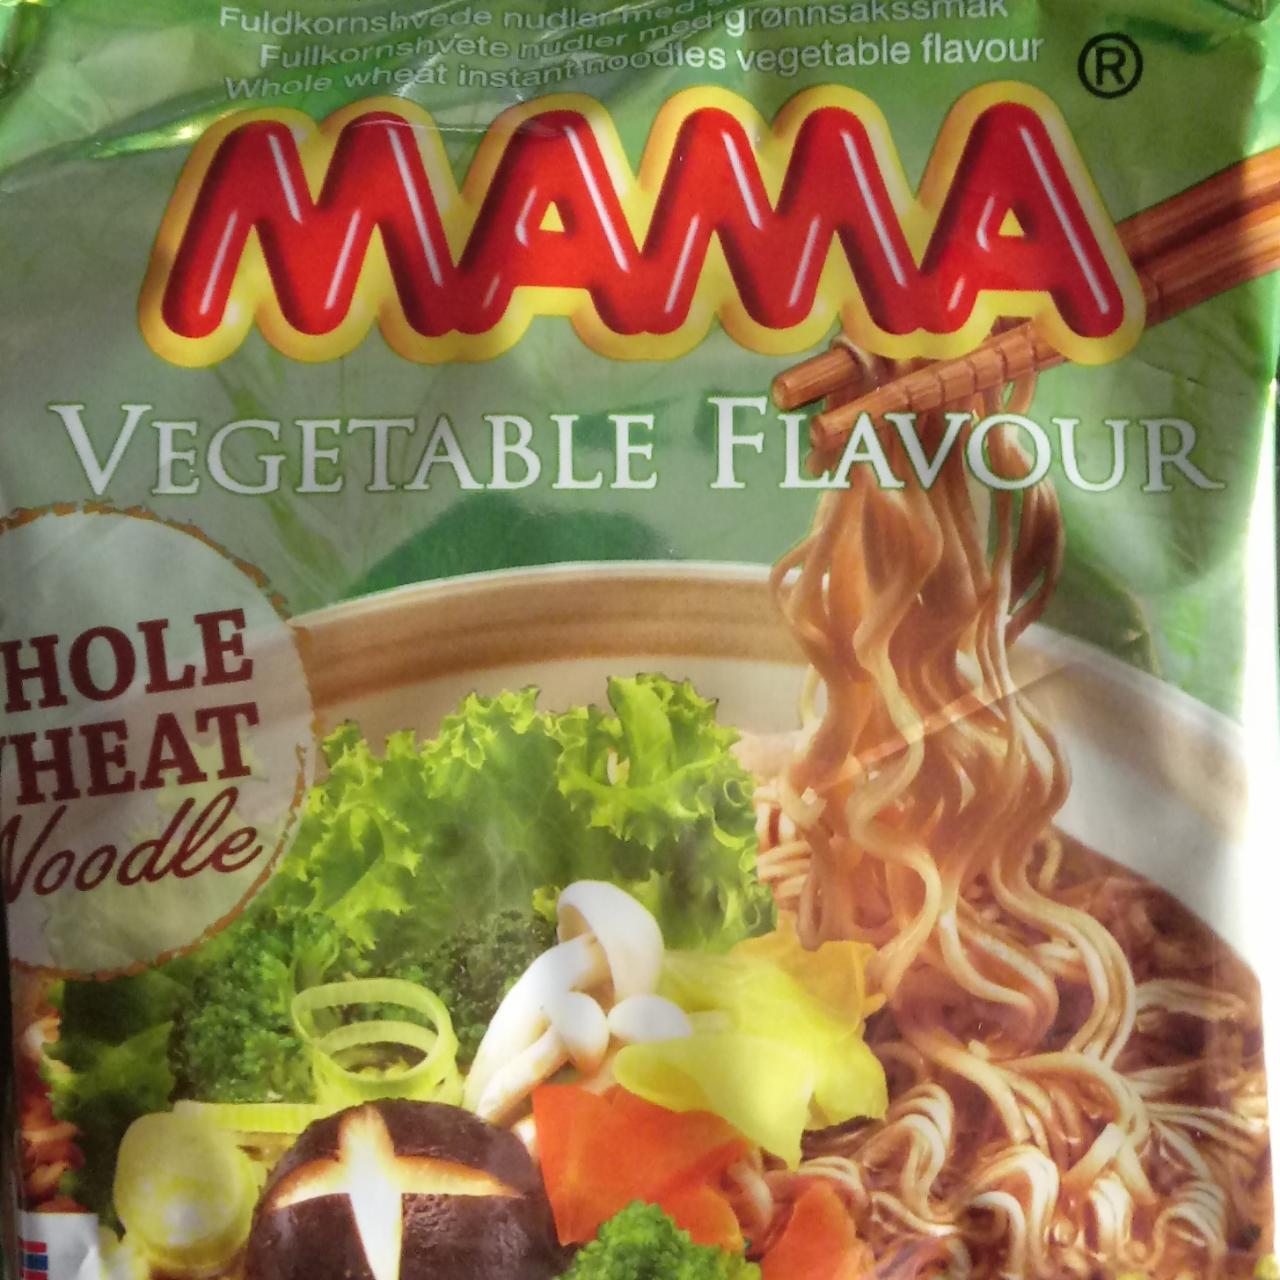 Fotografie - Whole Wheat Noodle Vegetable Flavour MAMA